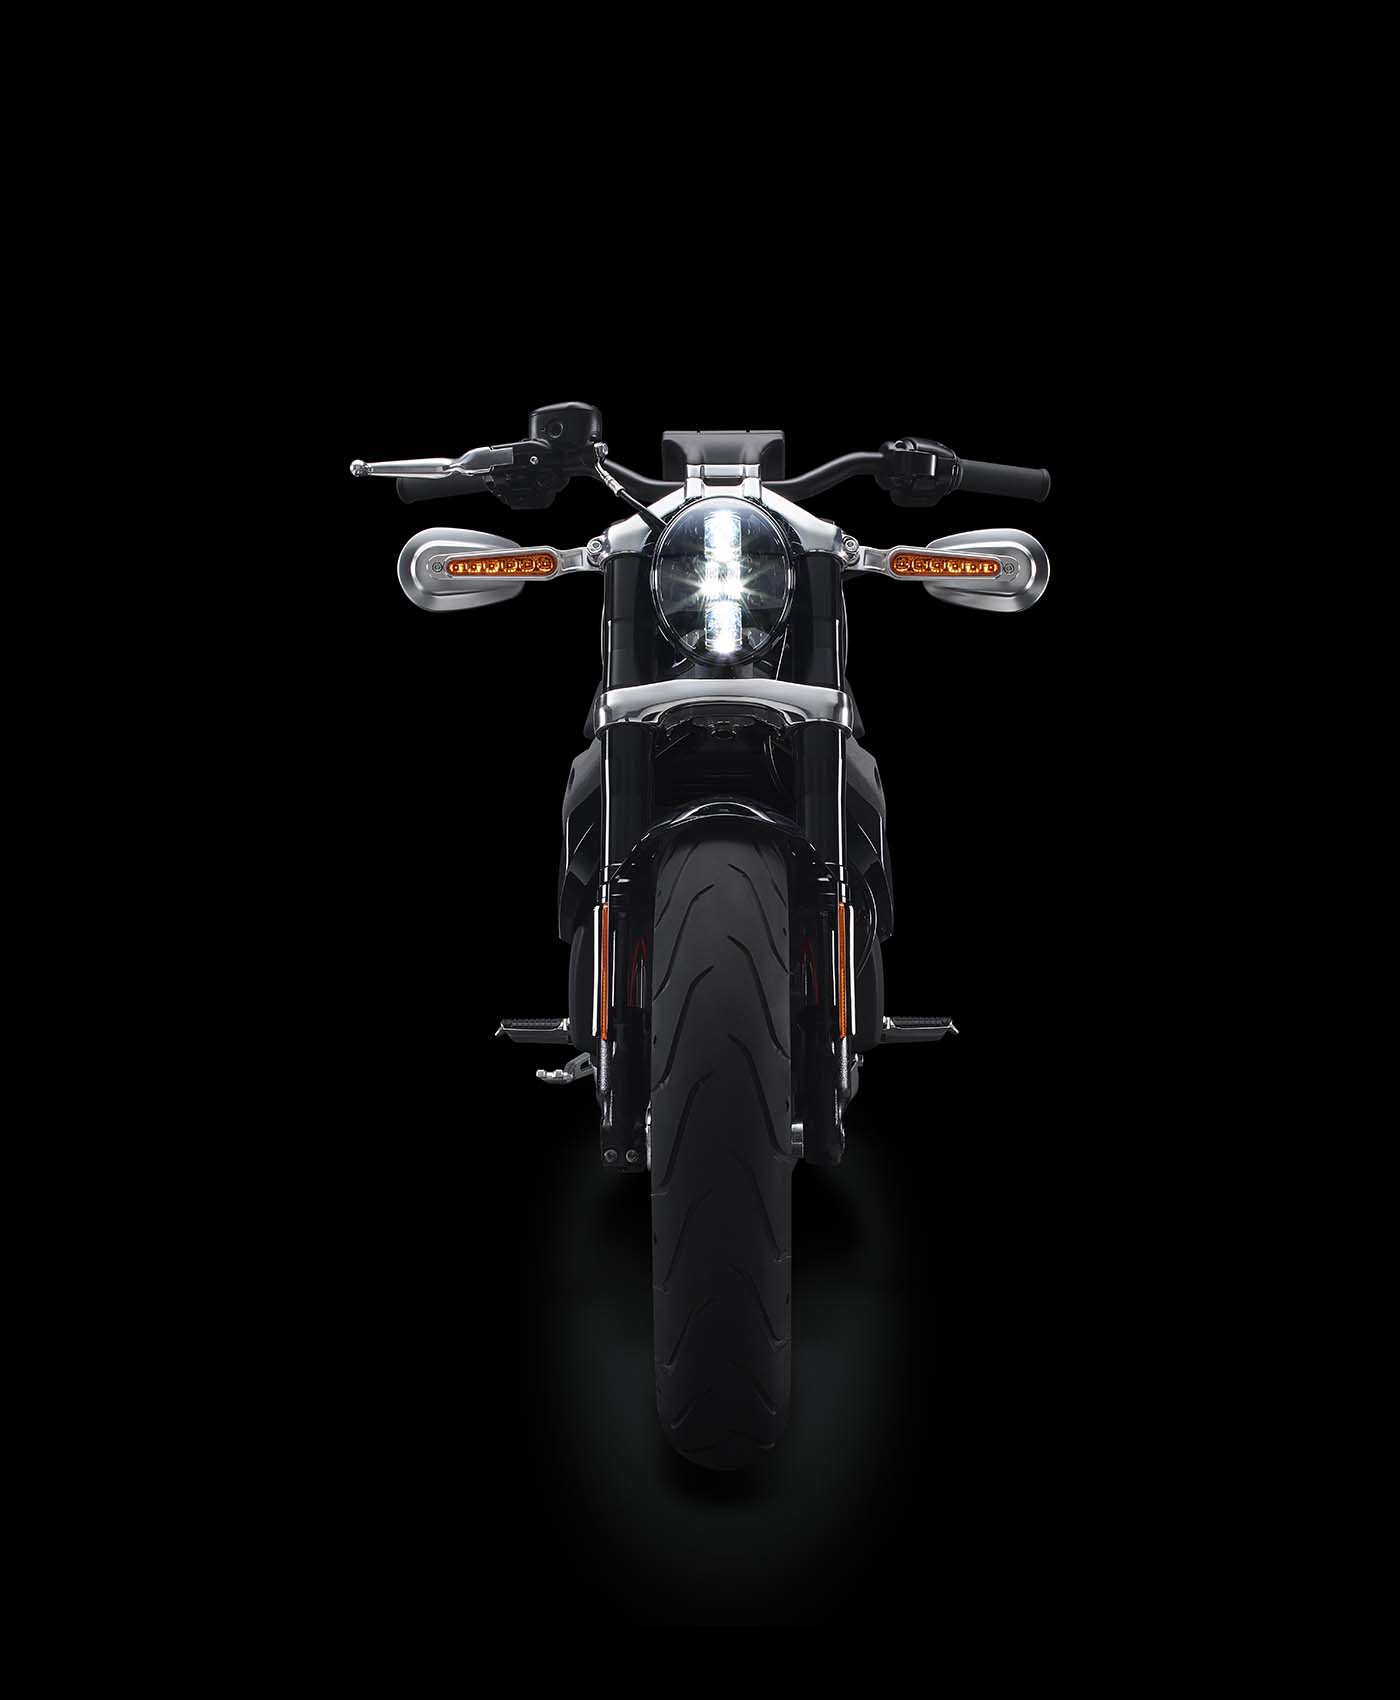 Harley-Davidson Livewire Technical Specs Finally Released - Asphalt & Rubber